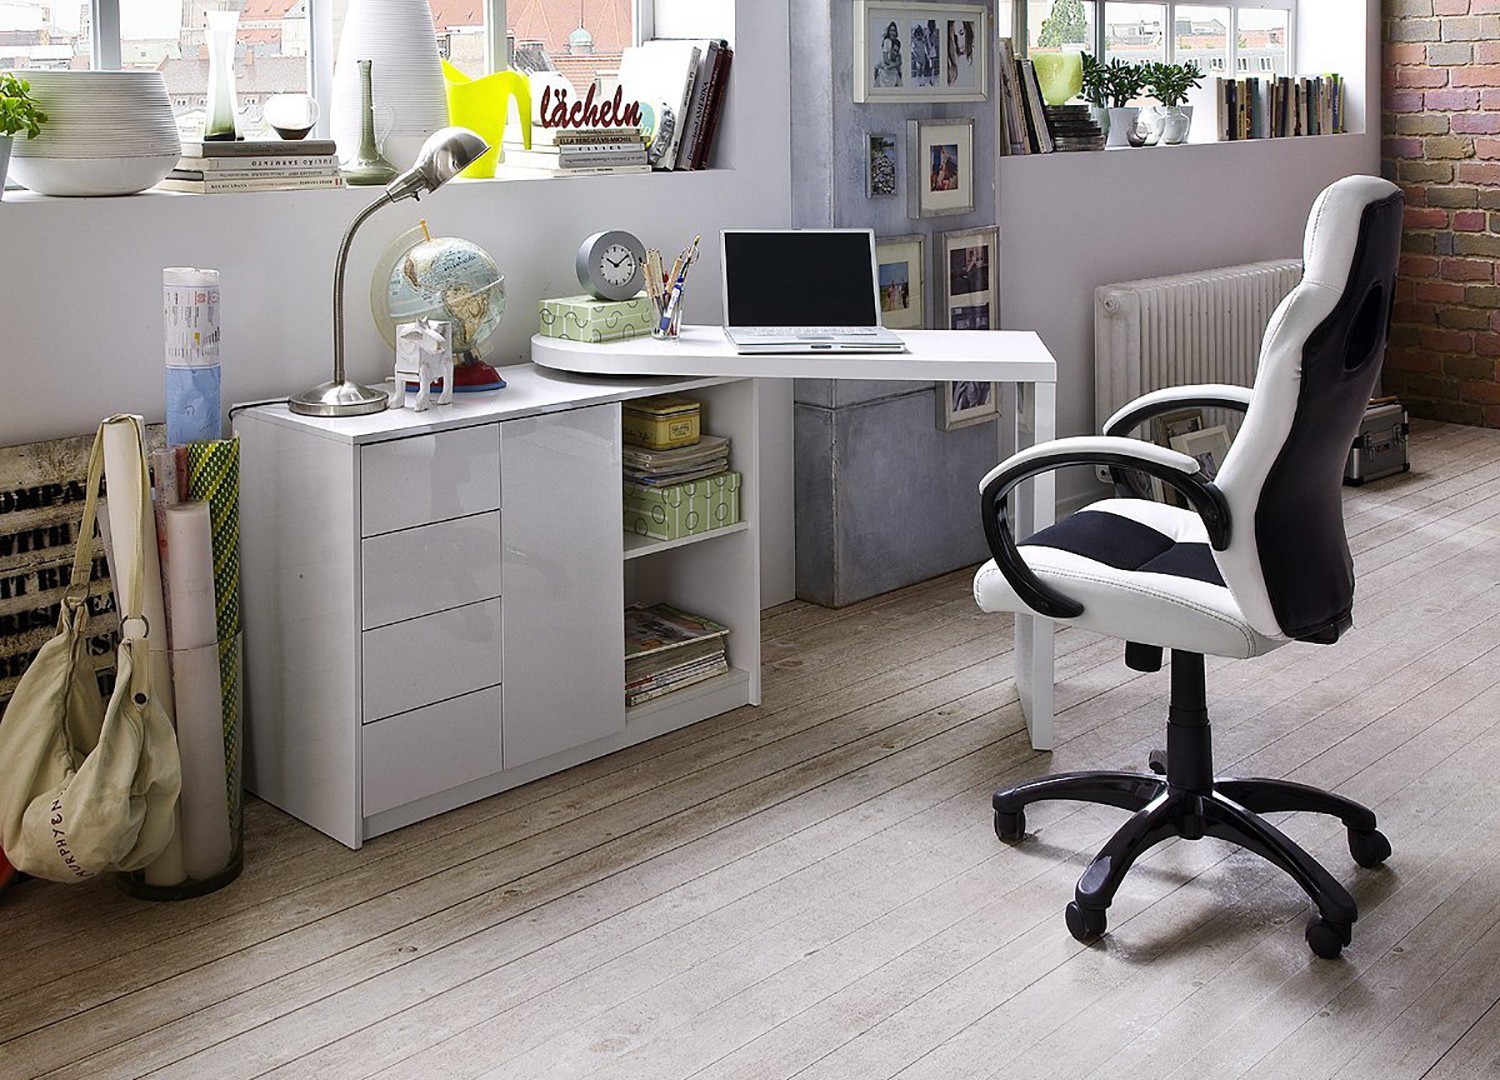 Bureau design moderne 140x60 blanc avec étagères ouvertes Bolg